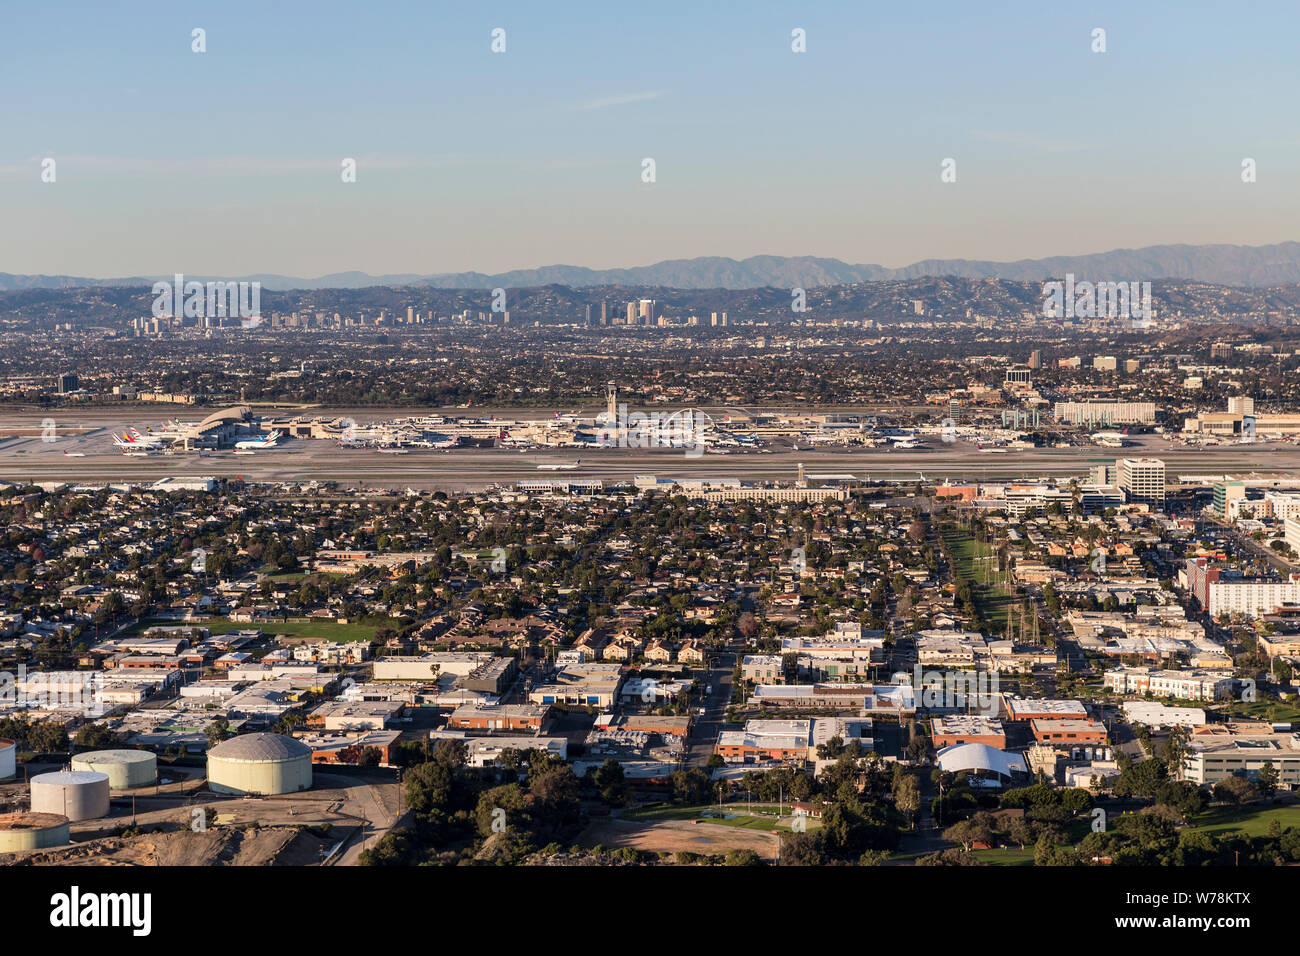 Los Angeles, Kalifornien, USA - 17. Dezember 2016: Luftaufnahme von El Segundo Nachbarschaften, LAX, Century City und die Santa Monica Mountains. Stockfoto